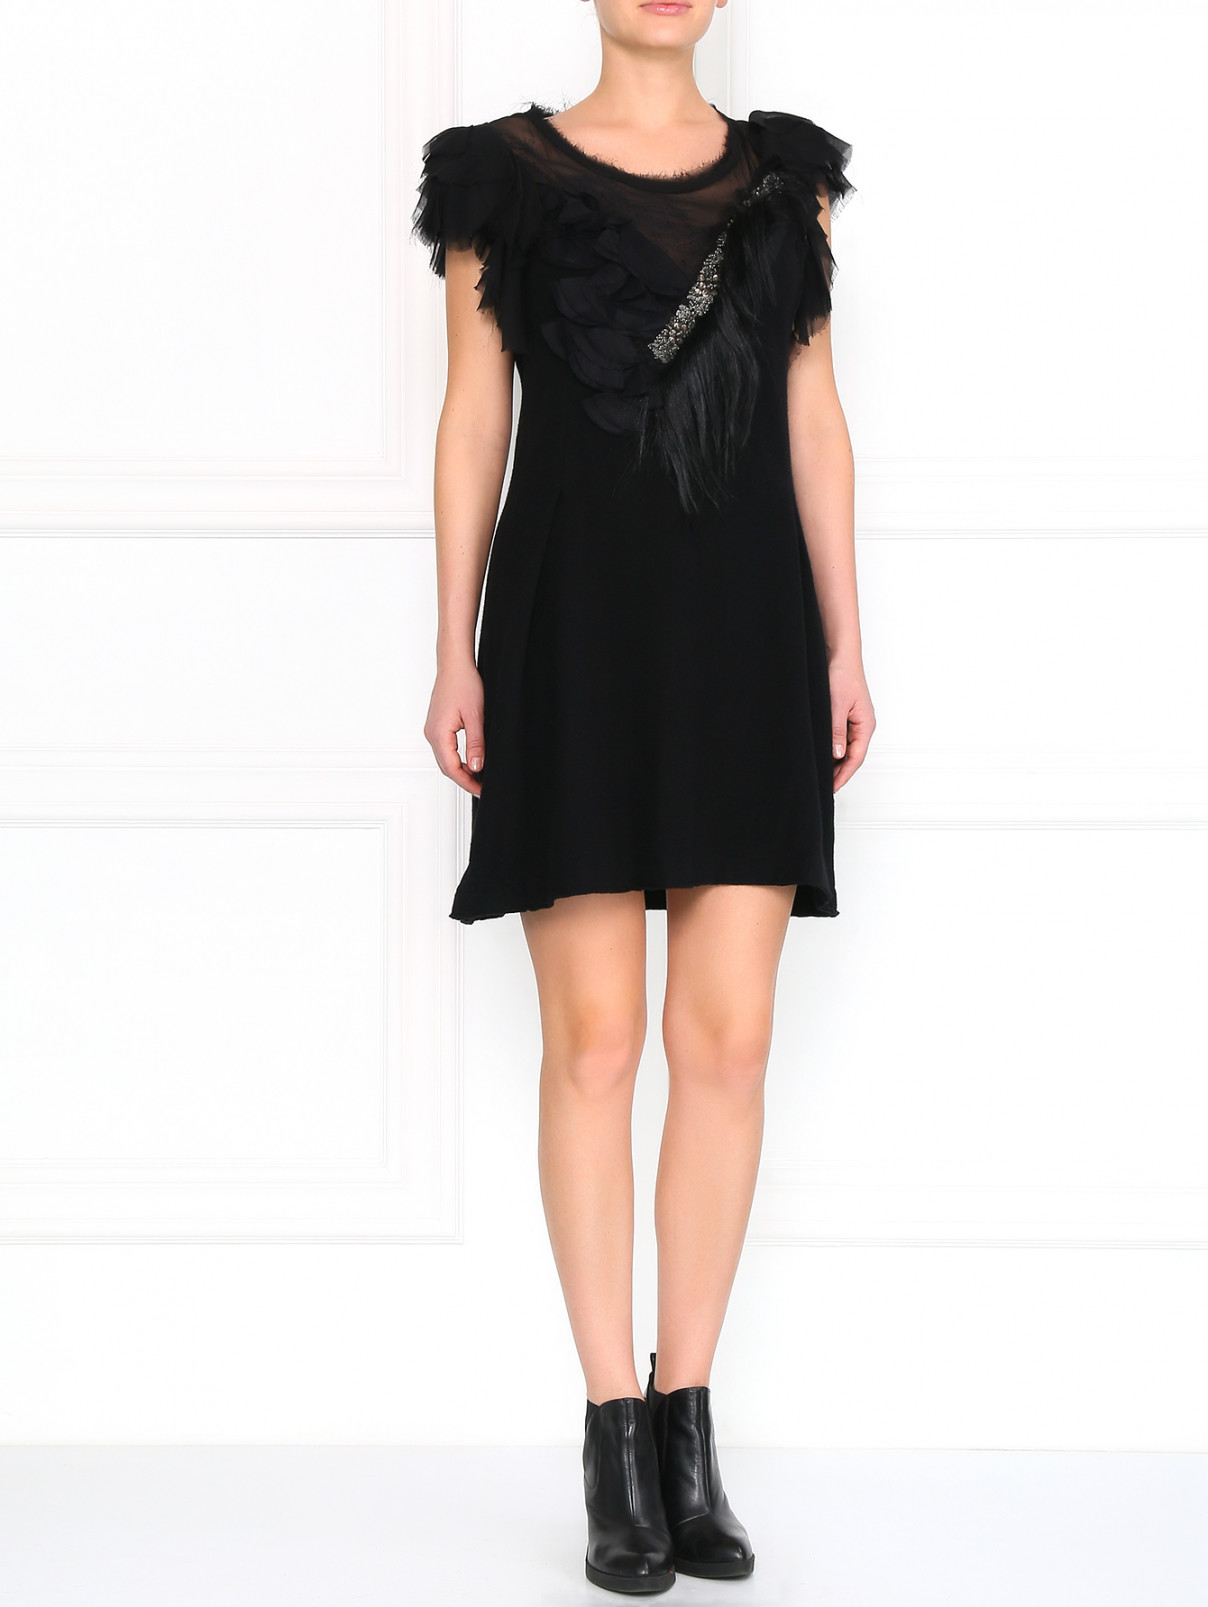 Трикотажное платье декорированное мехом Antonio Marras  –  Модель Общий вид  – Цвет:  Черный